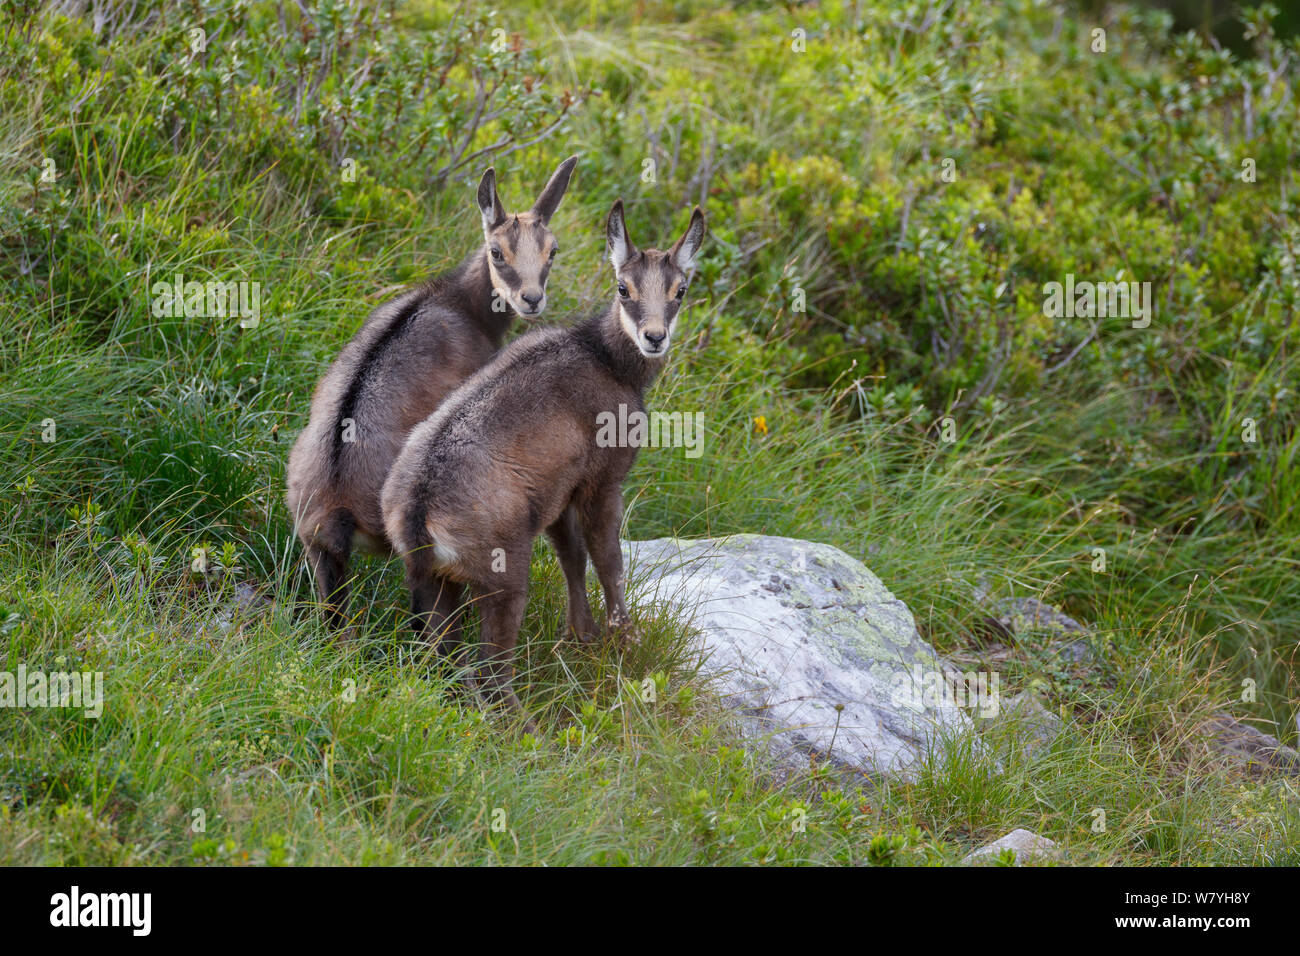 Zwei Kinder GEMSE (RUPICAPRA rupicapra) zusammen. Berner Alpen, Schweiz. August. Stockfoto